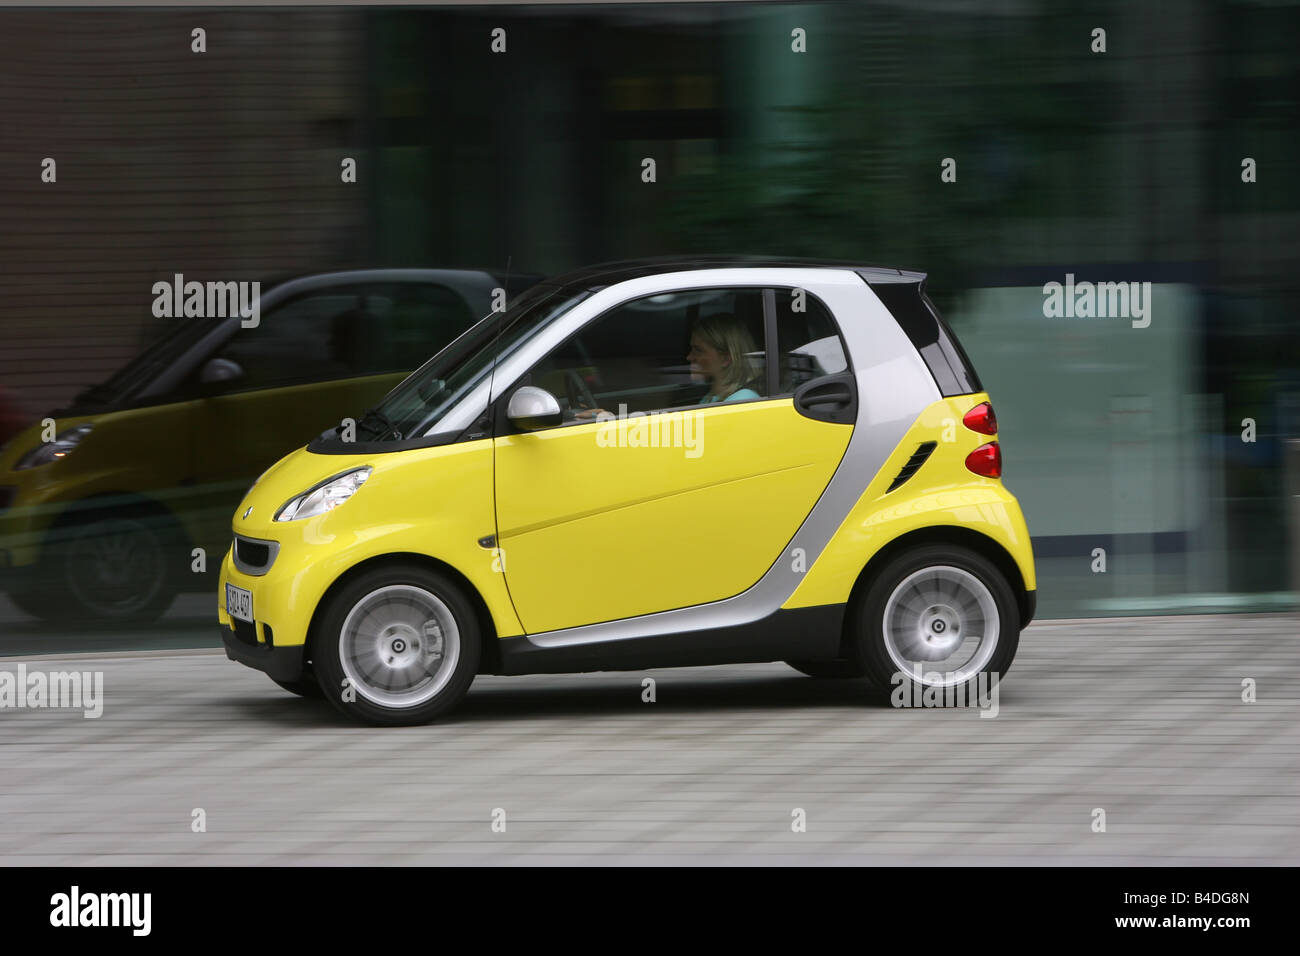 Smart fortwo gelb -Fotos und -Bildmaterial in hoher Auflösung – Alamy